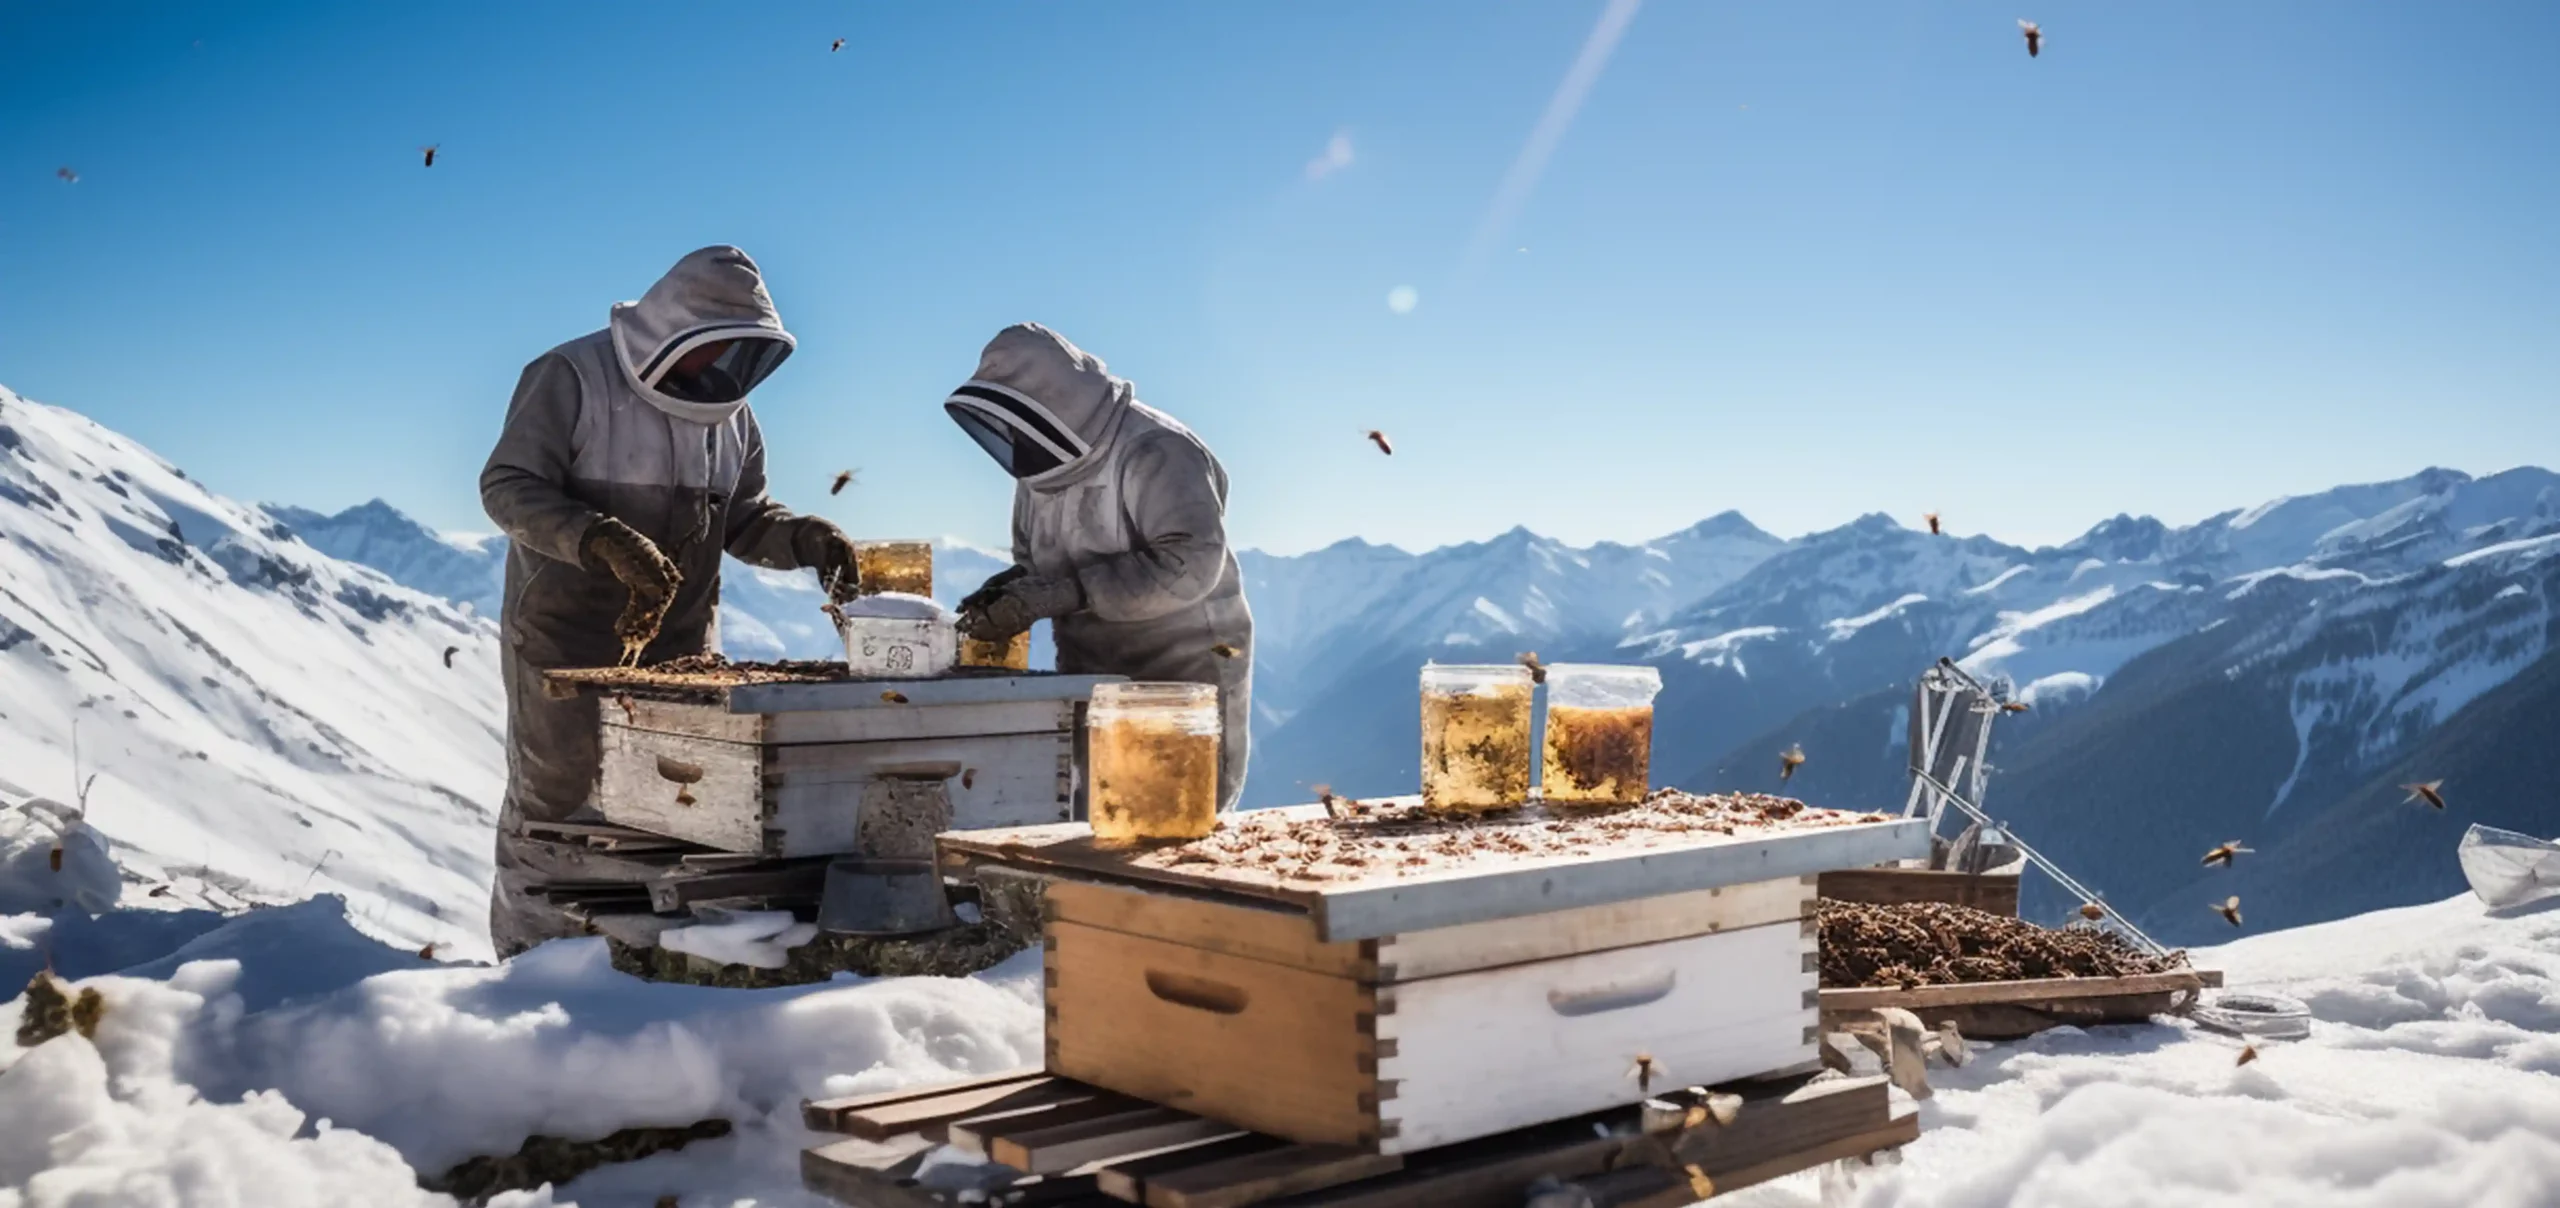 Imker im Schnee, Alpen, Vor Behältern mit Honig und Bio Honig bzw. Honigen